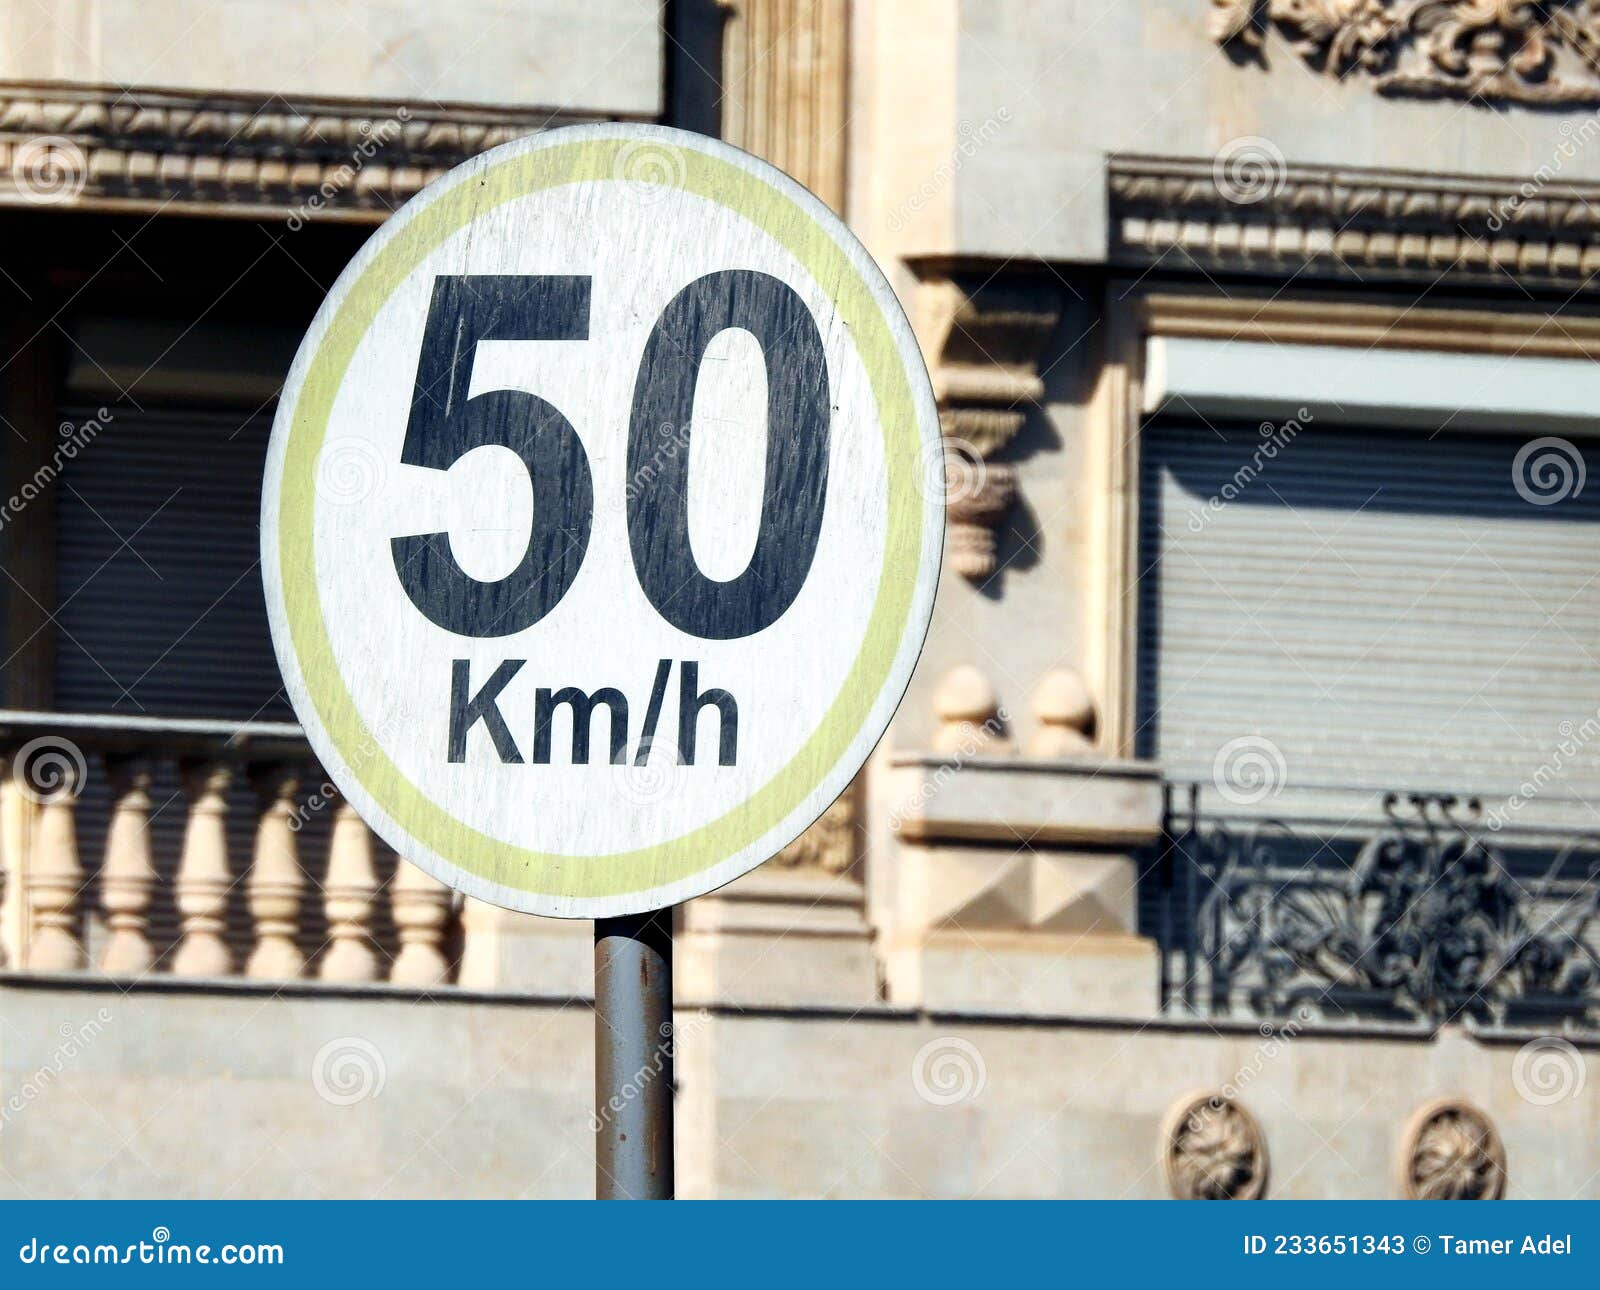 Höchstgeschwindigkeit 2 km/h nicht zu überschreiten Schild mit